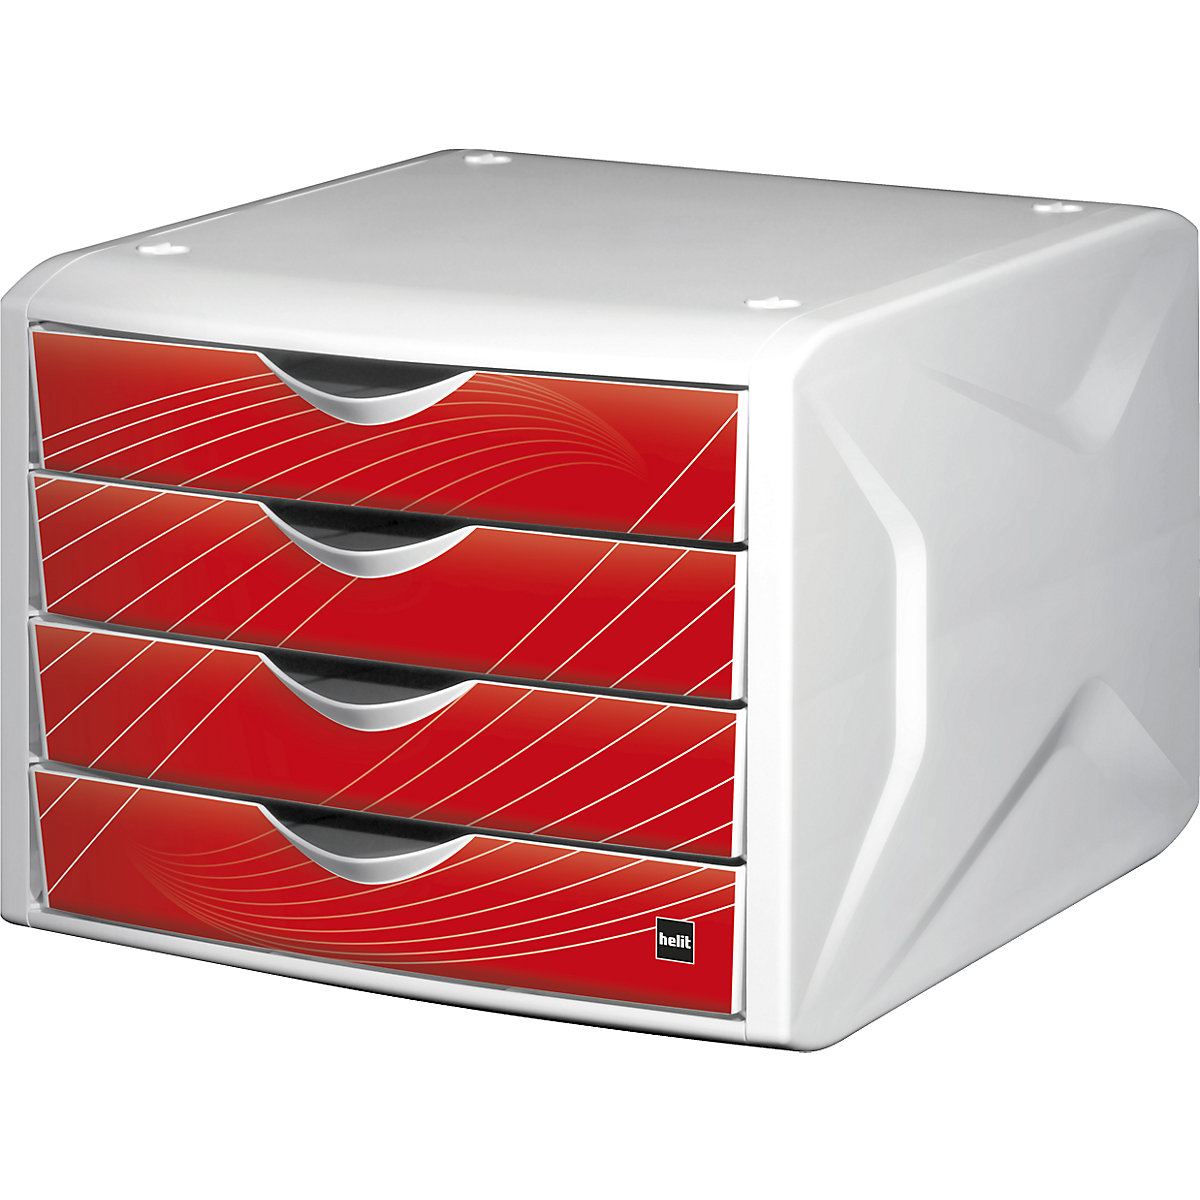 Bloc-tiroirs – helit, h x l x p 212 x 262 x 330 mm, lot de 5, design tiroirs red rook-7